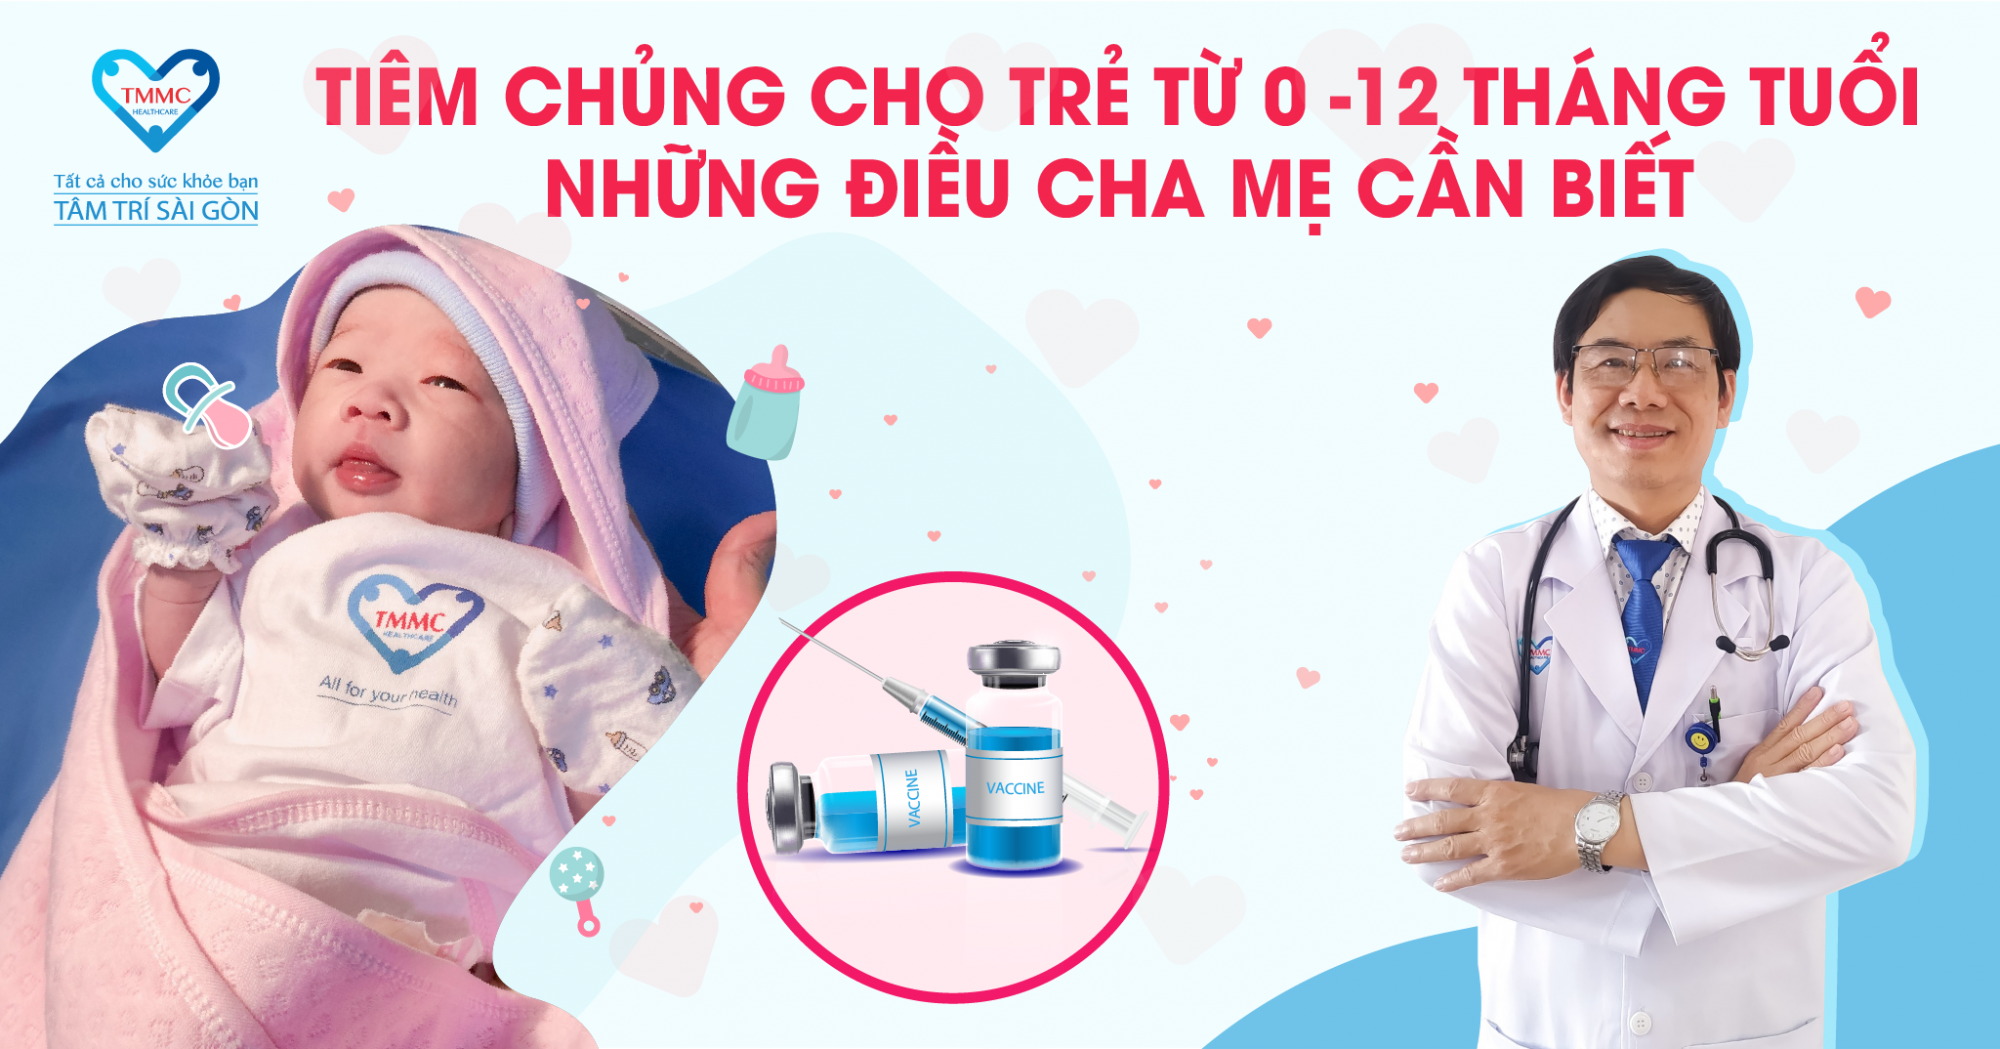 vaccine-cho-tre-tu-0-den-12-thang-tuoi-01_1